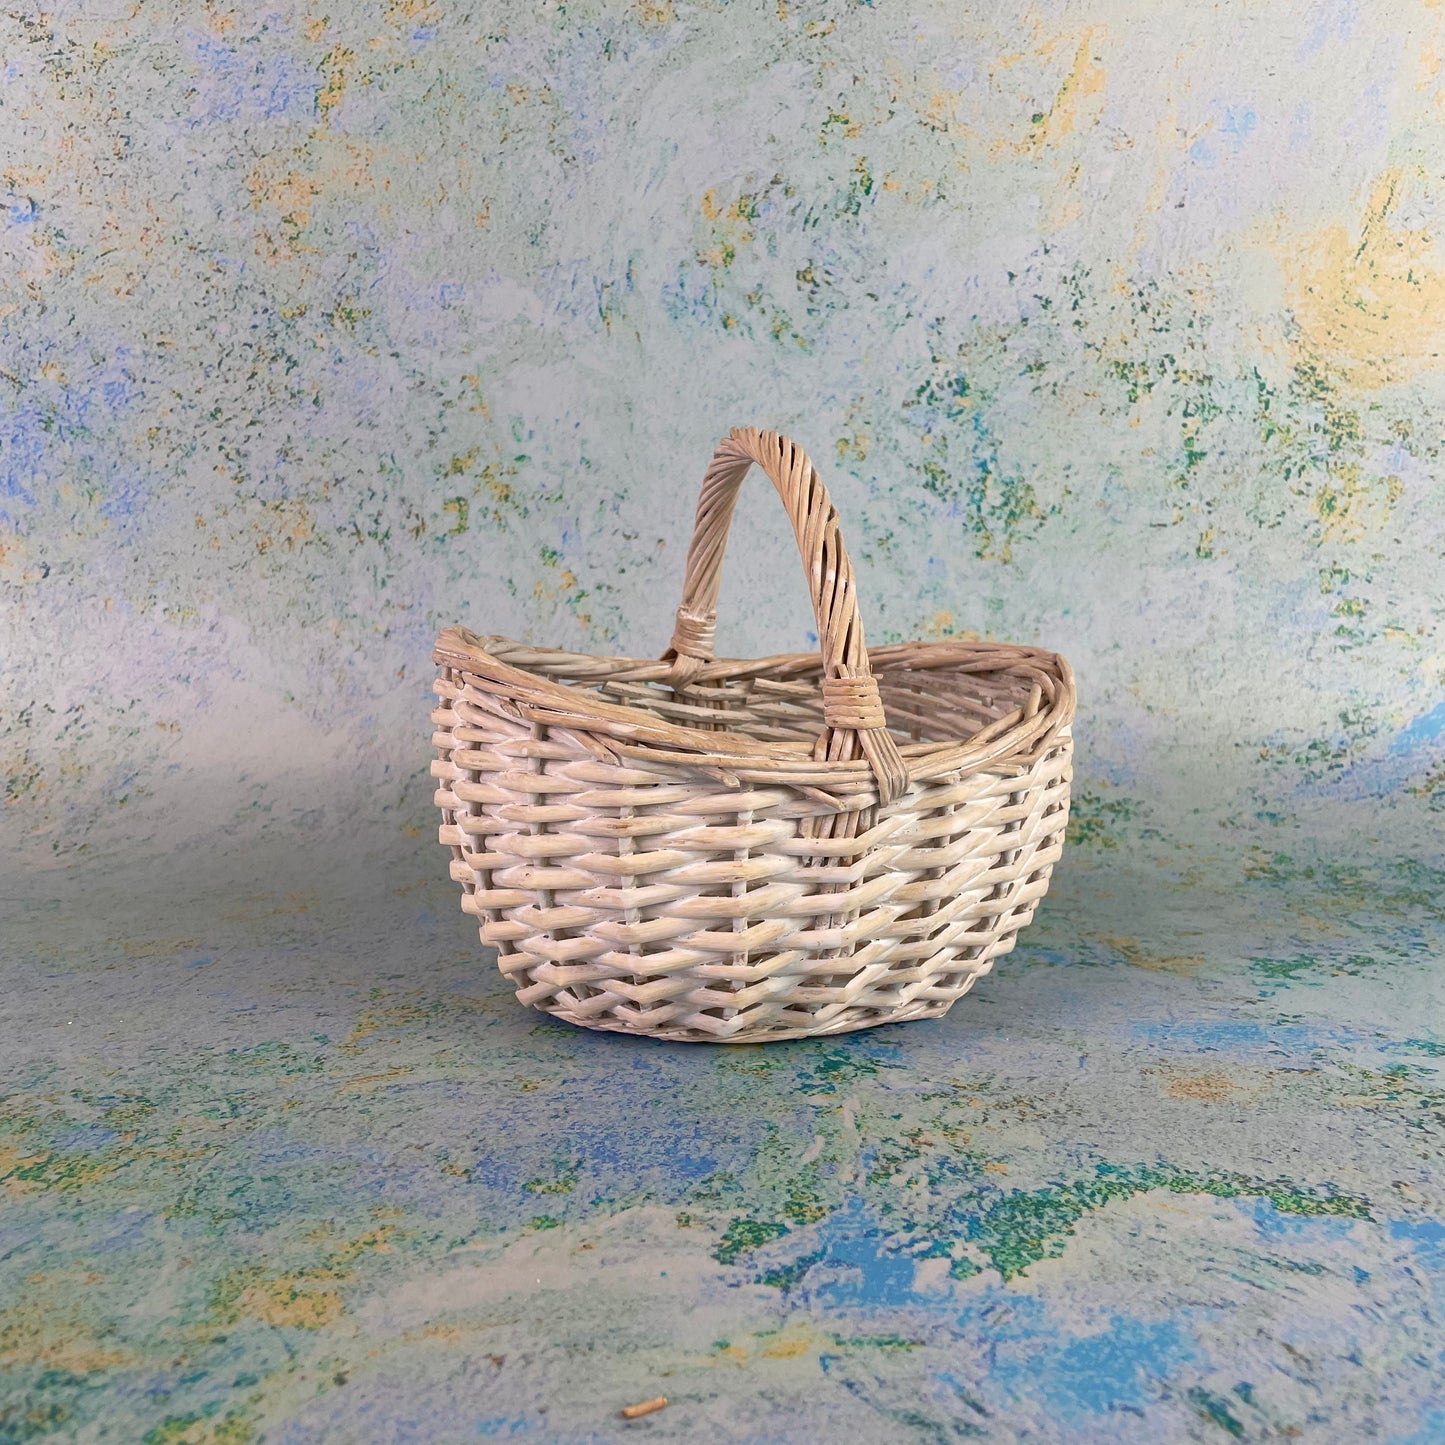 Small Easter Egg Hunt Basket - White Wicker